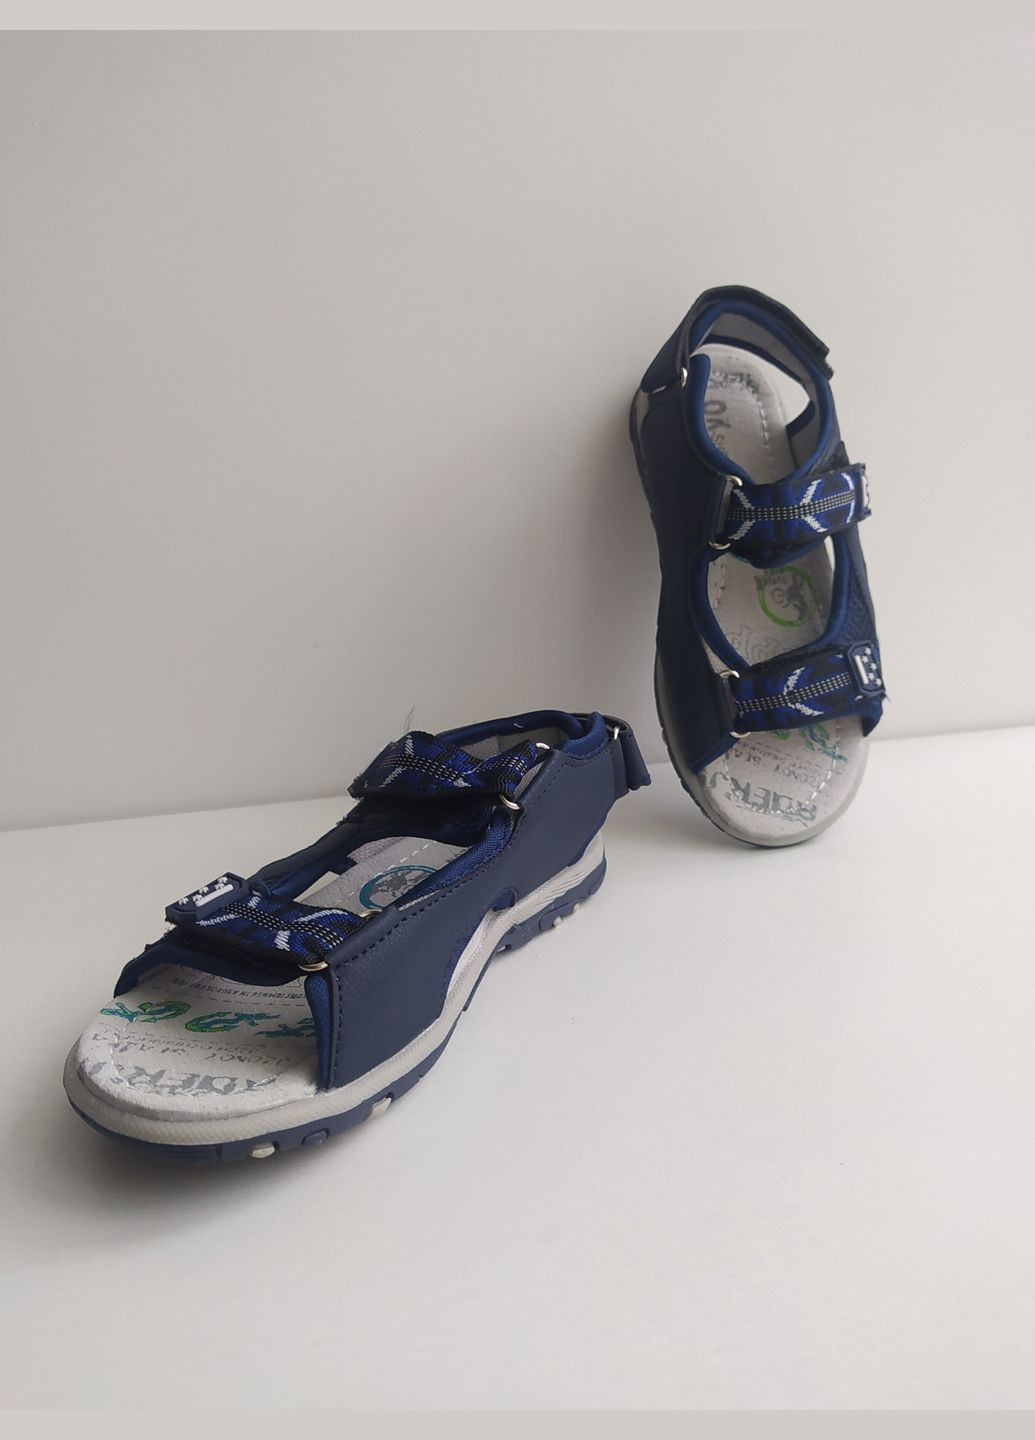 Синие детские сандалии 28 г 17,6 см синий артикул б191 Jong Golf